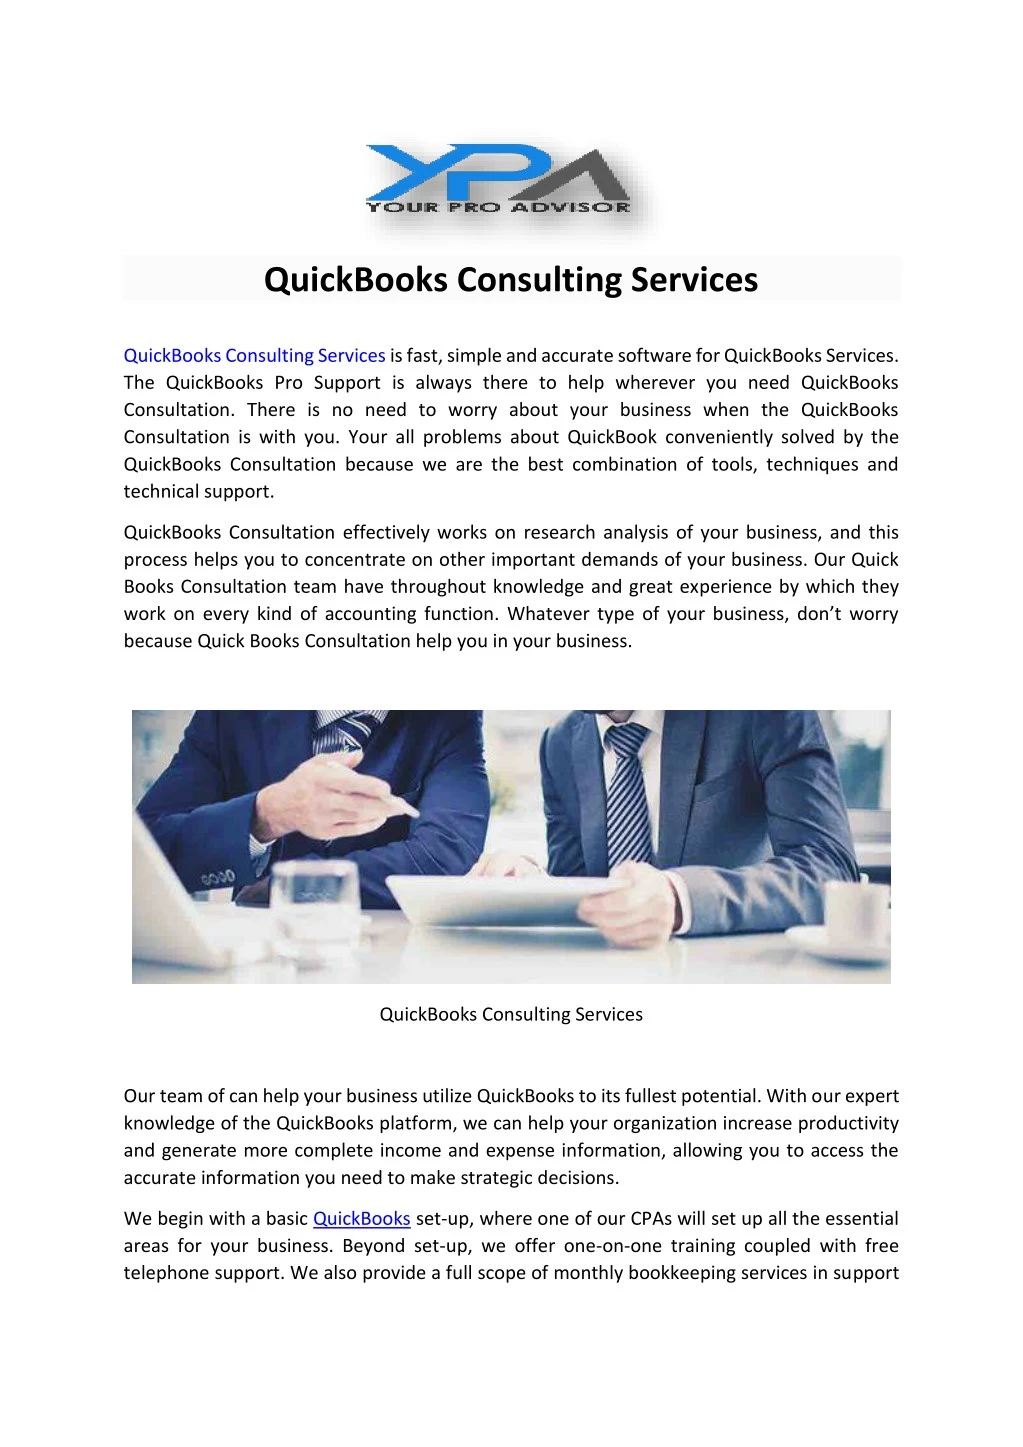 quickbooks consulting services